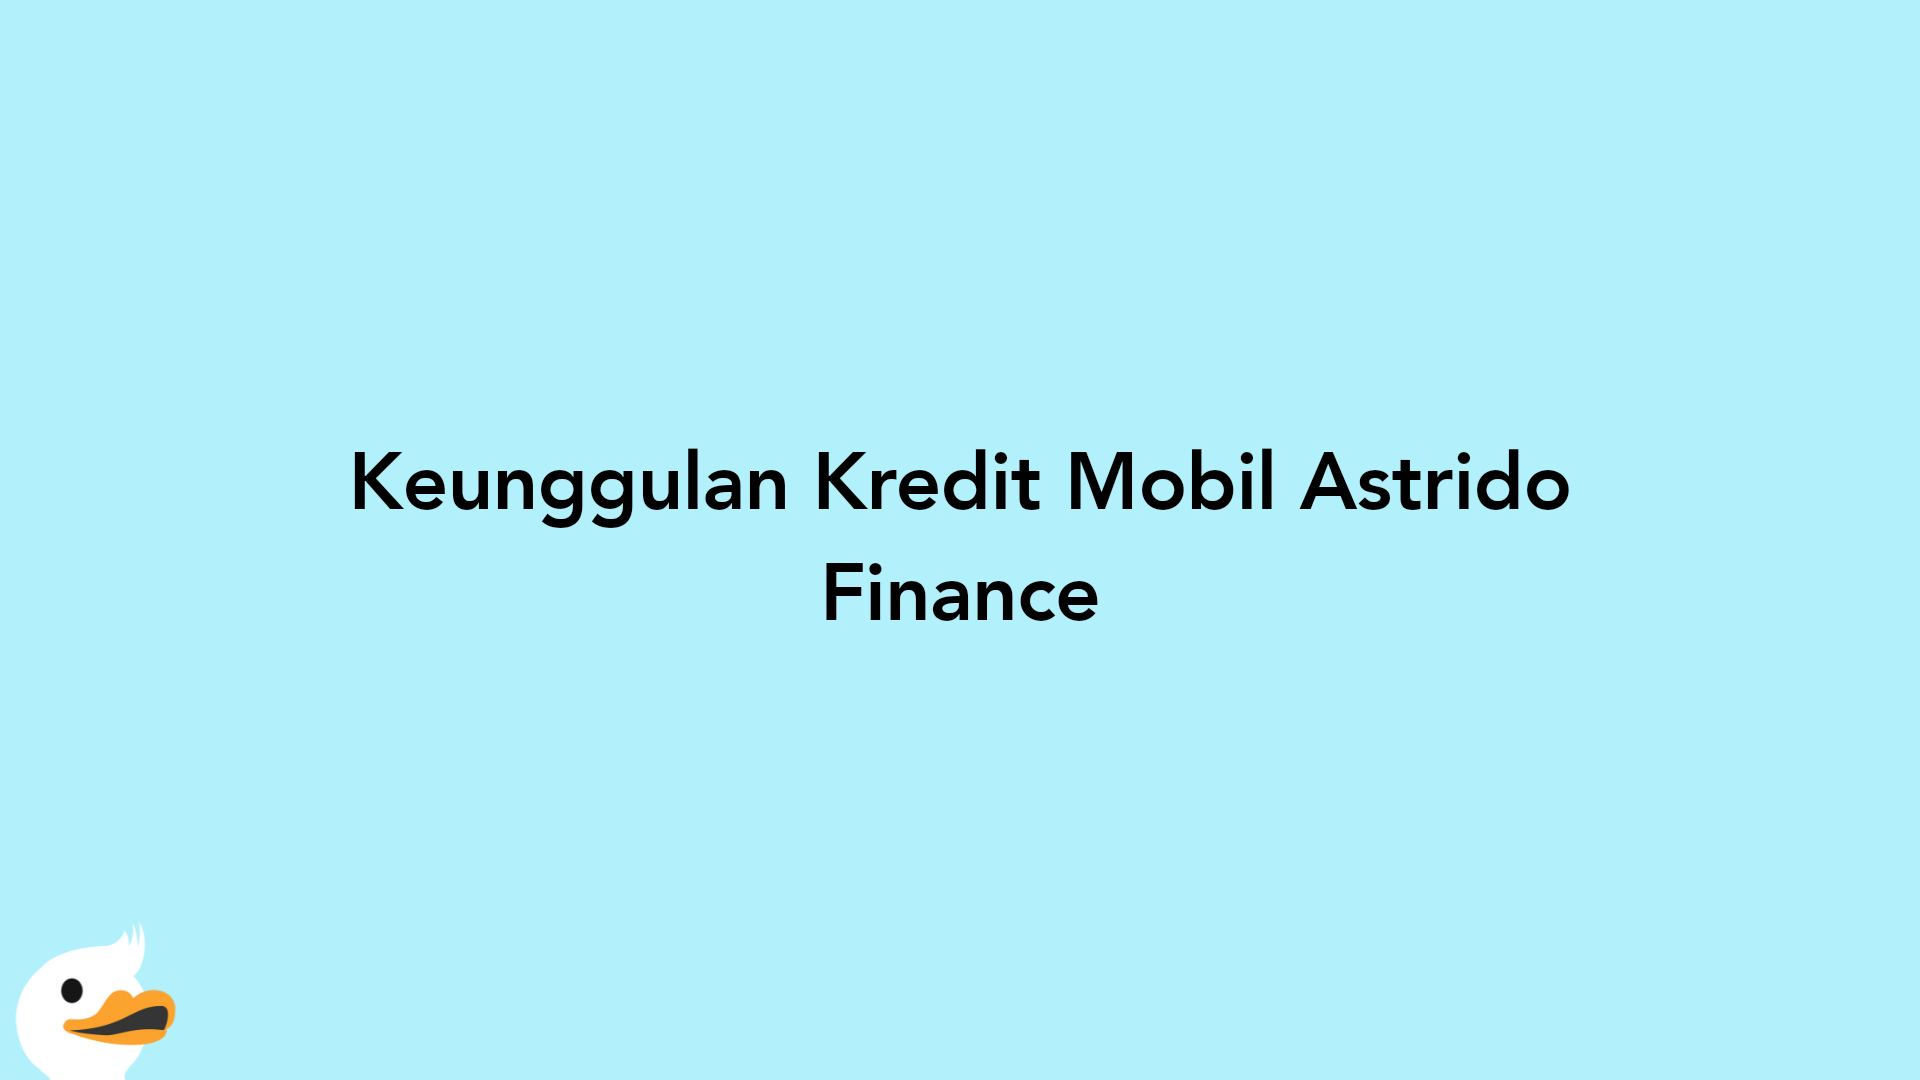 Keunggulan Kredit Mobil Astrido Finance